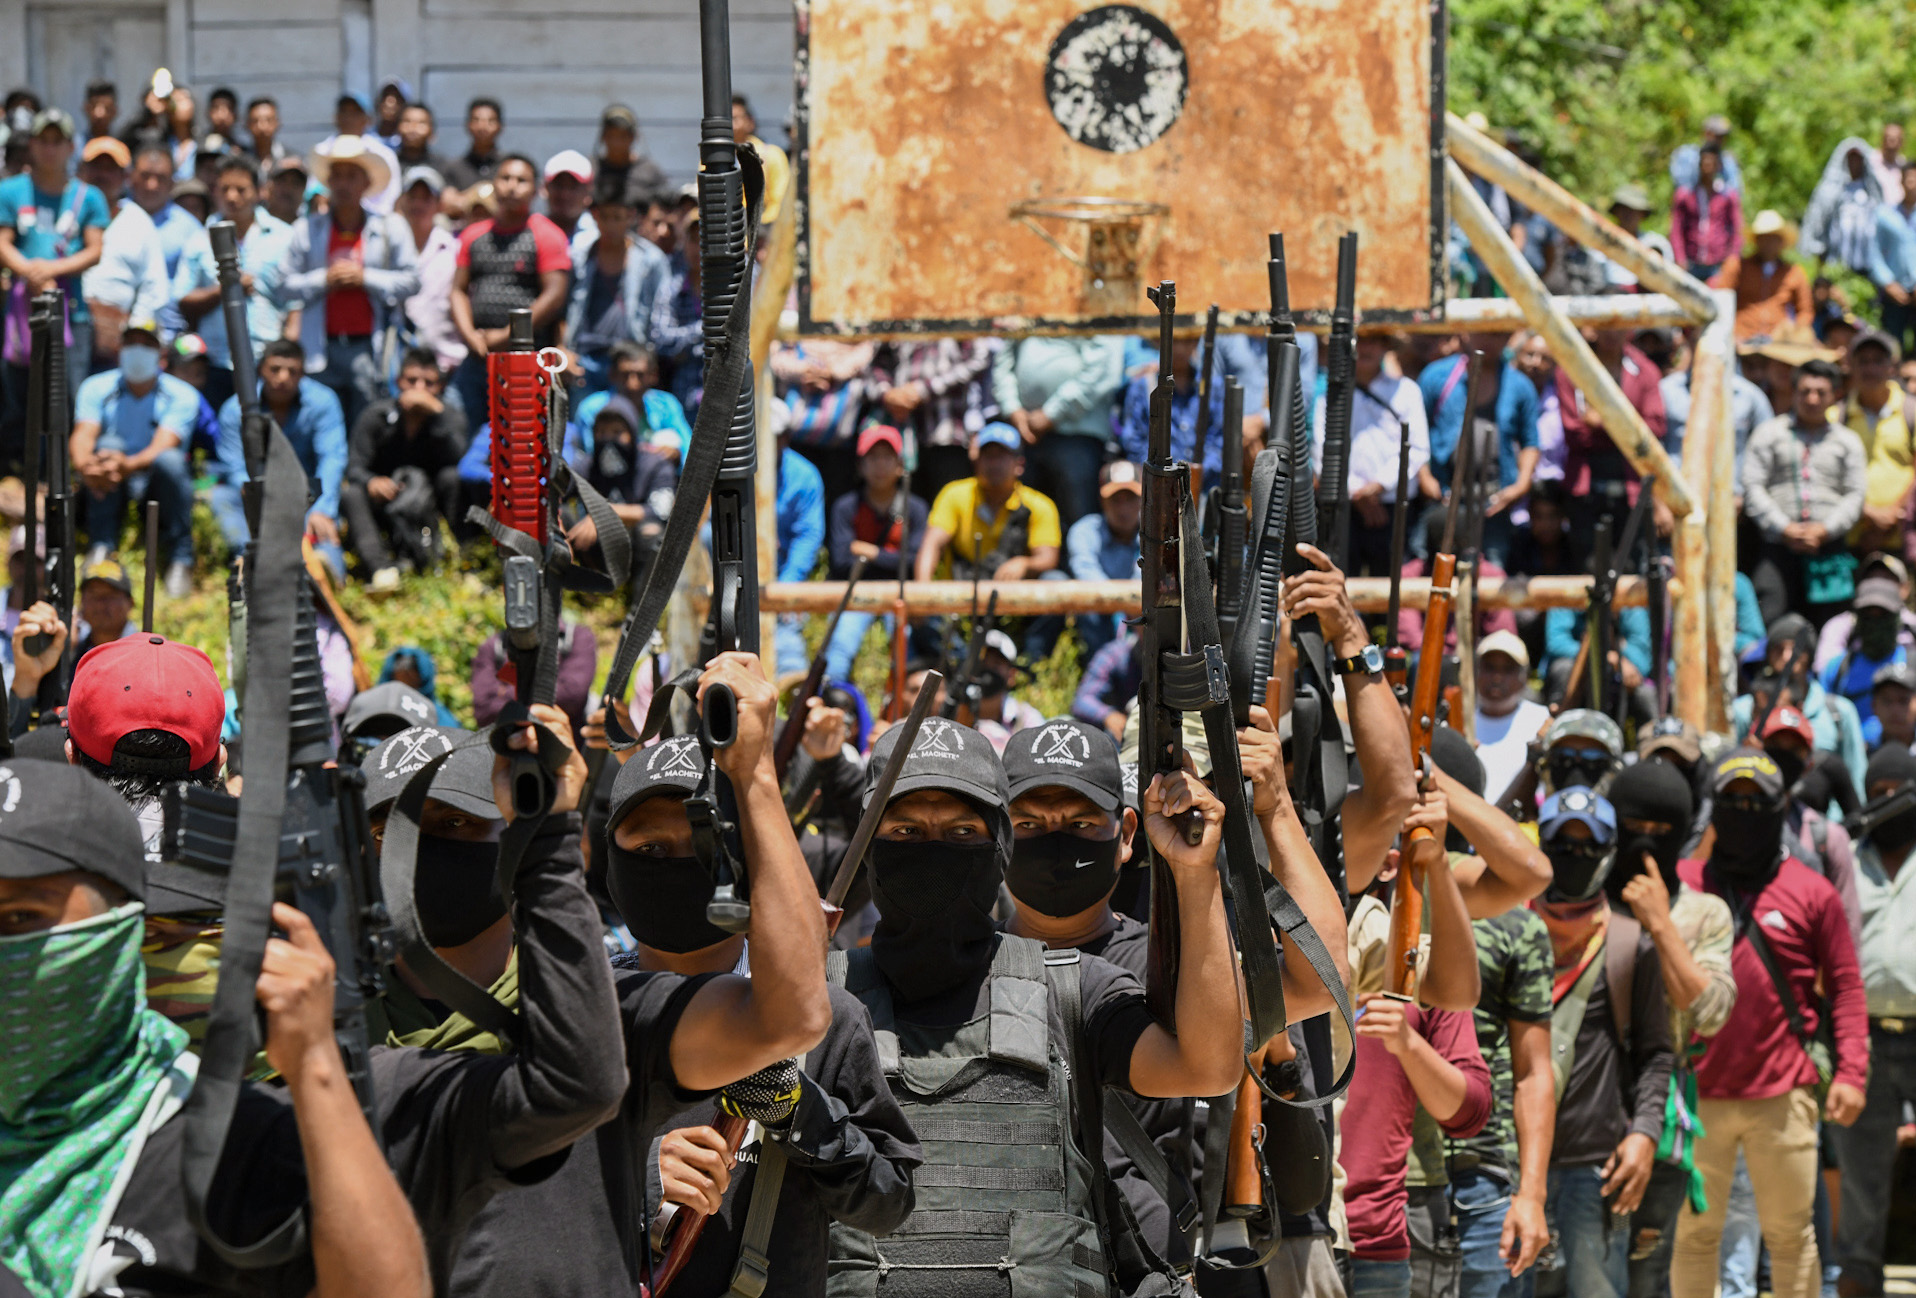 Uno de los voceros de "El Machete" dijo que decidieron armarse ante "la injusticia, para defender su vida y contra los sicarios del narco". (Foto Prensa Libre: AFP)